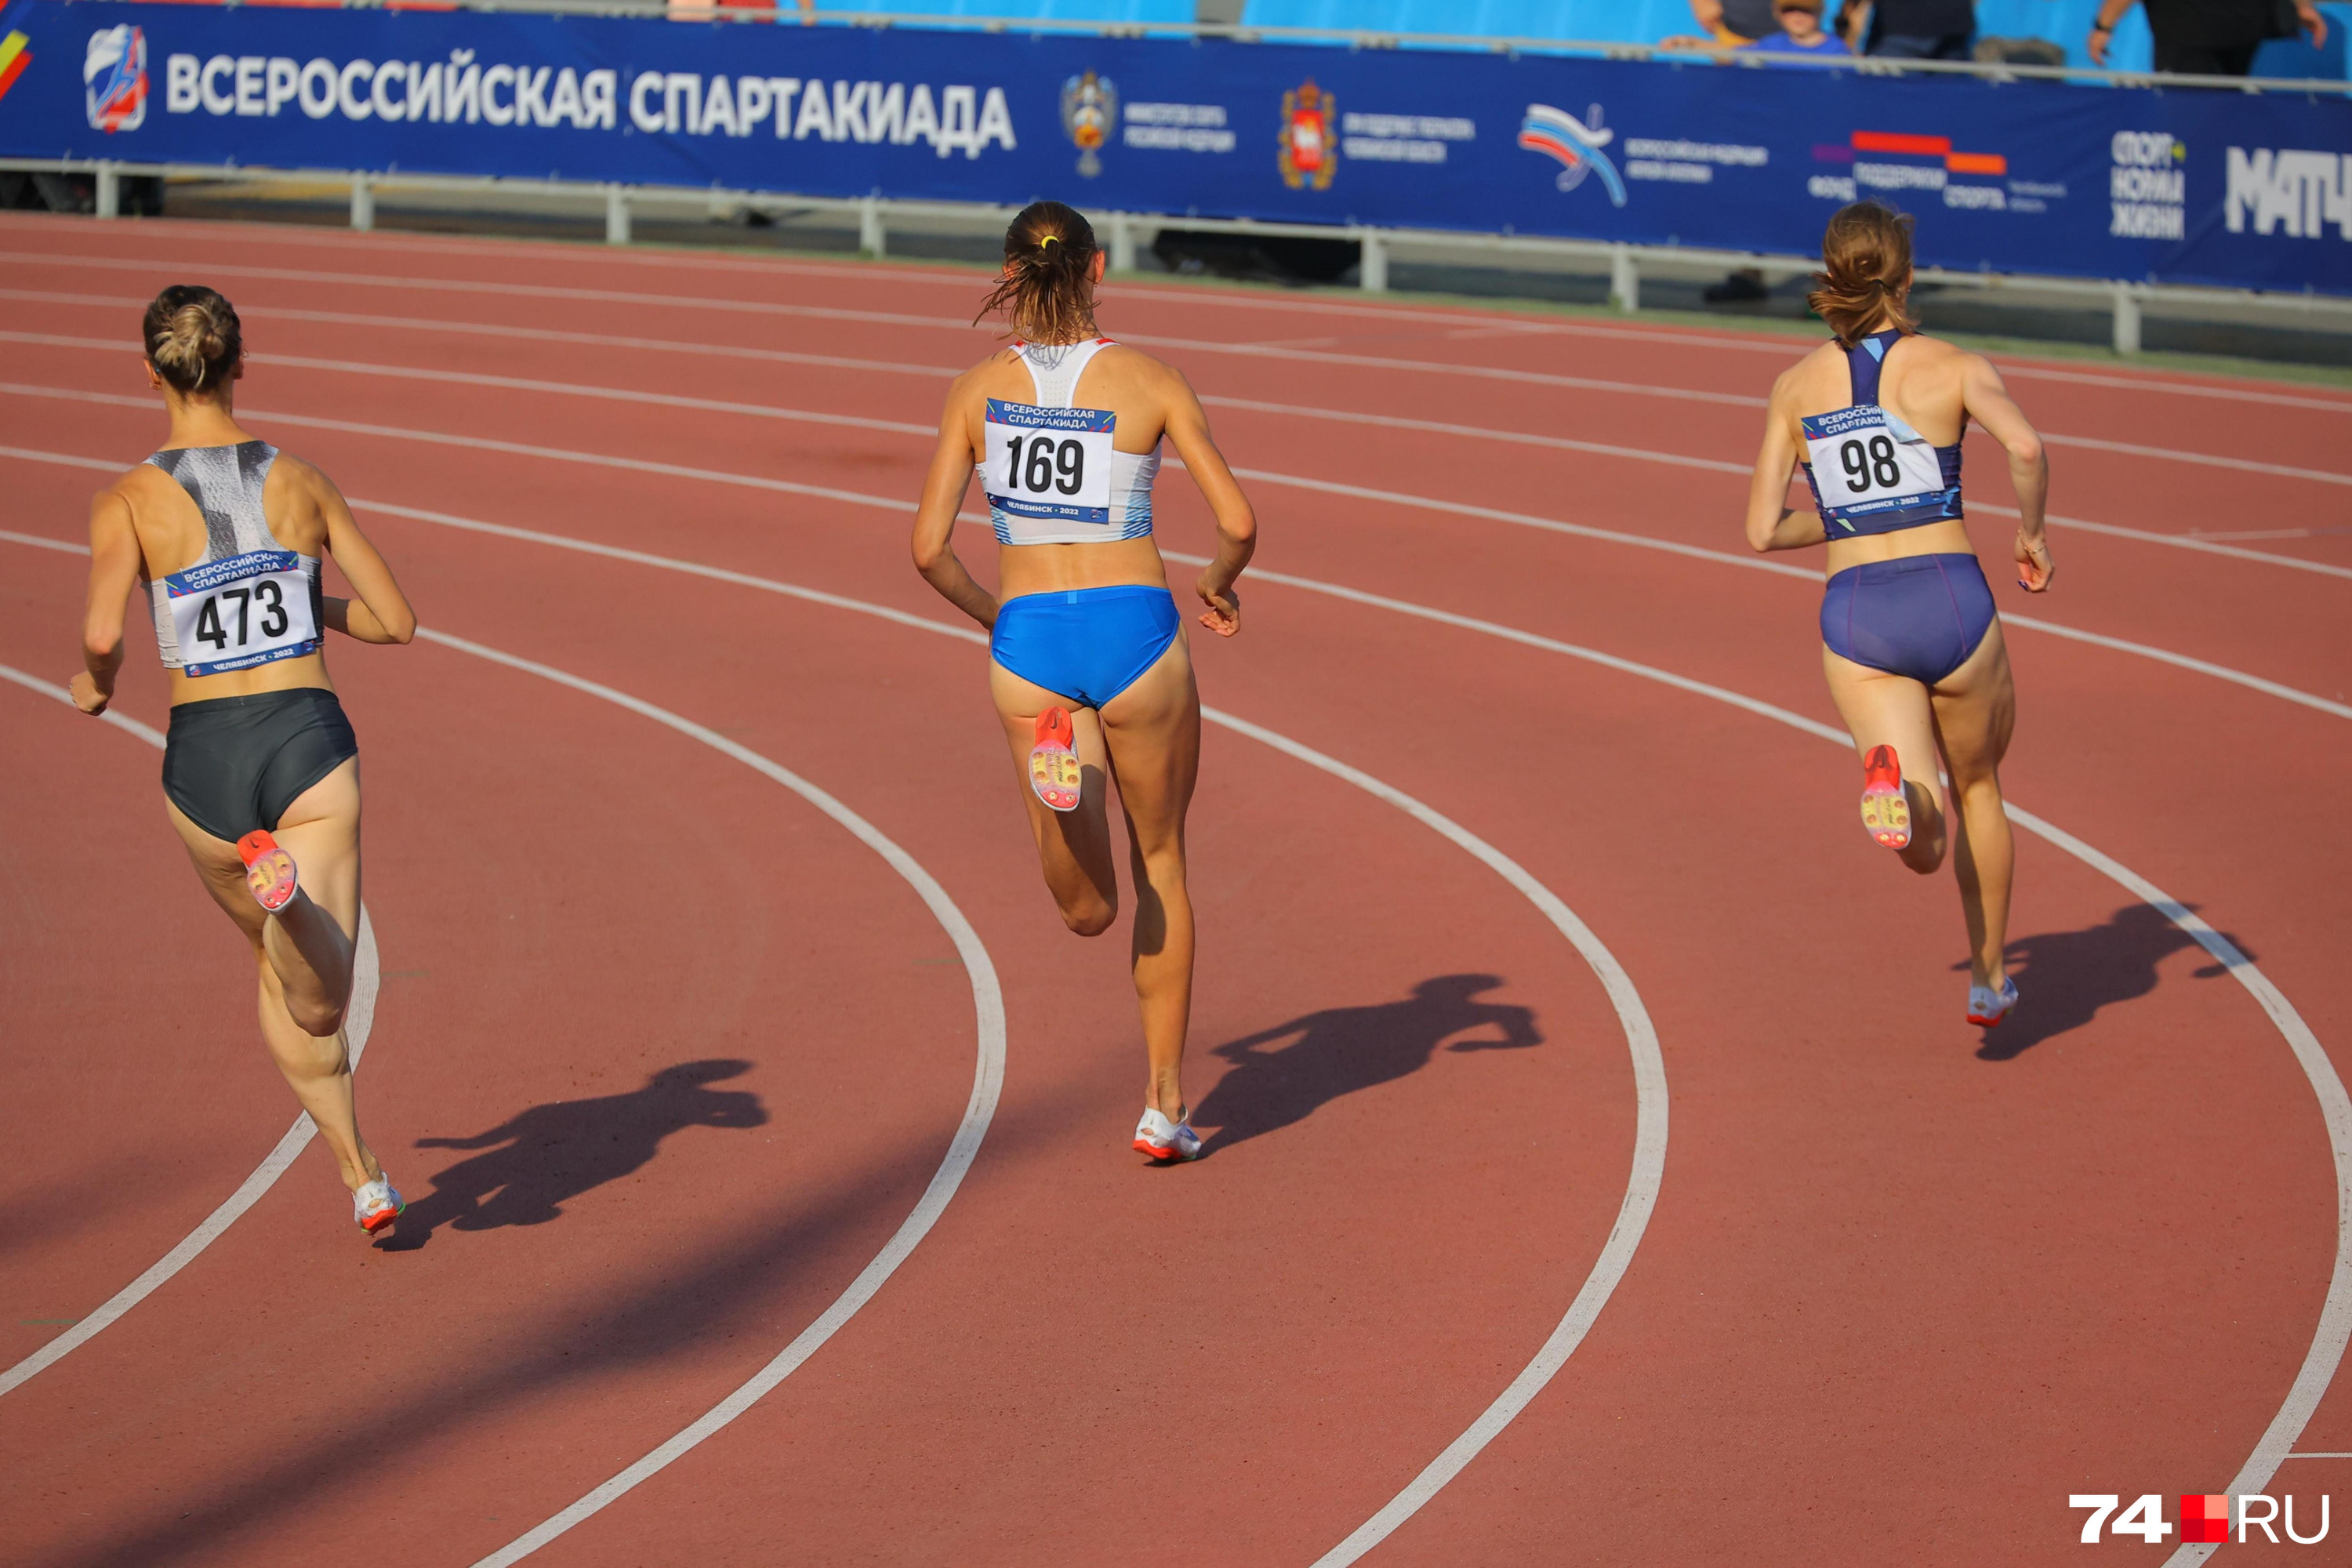 Российских спортсменов могут допустить до международных соревнований, но нужно выполнить три условия